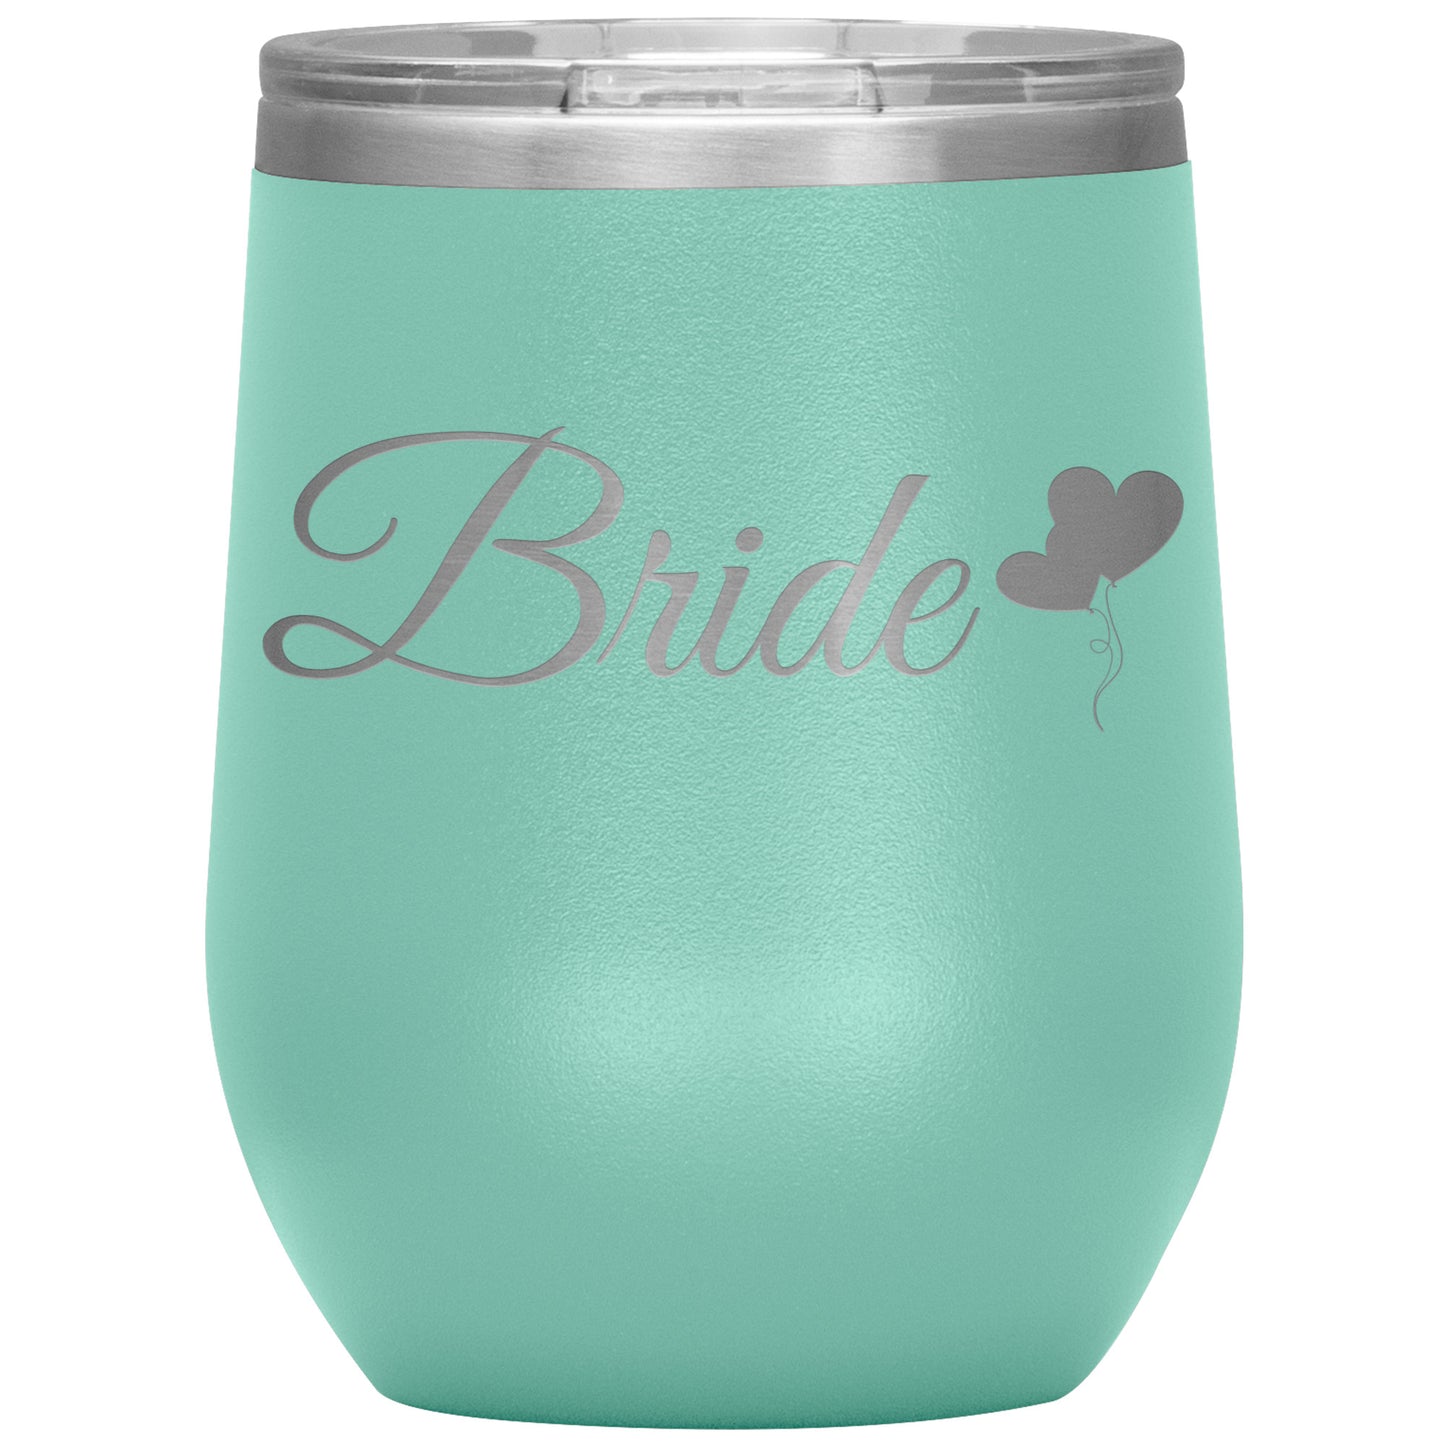 Bride 💕 Wine Tumbler